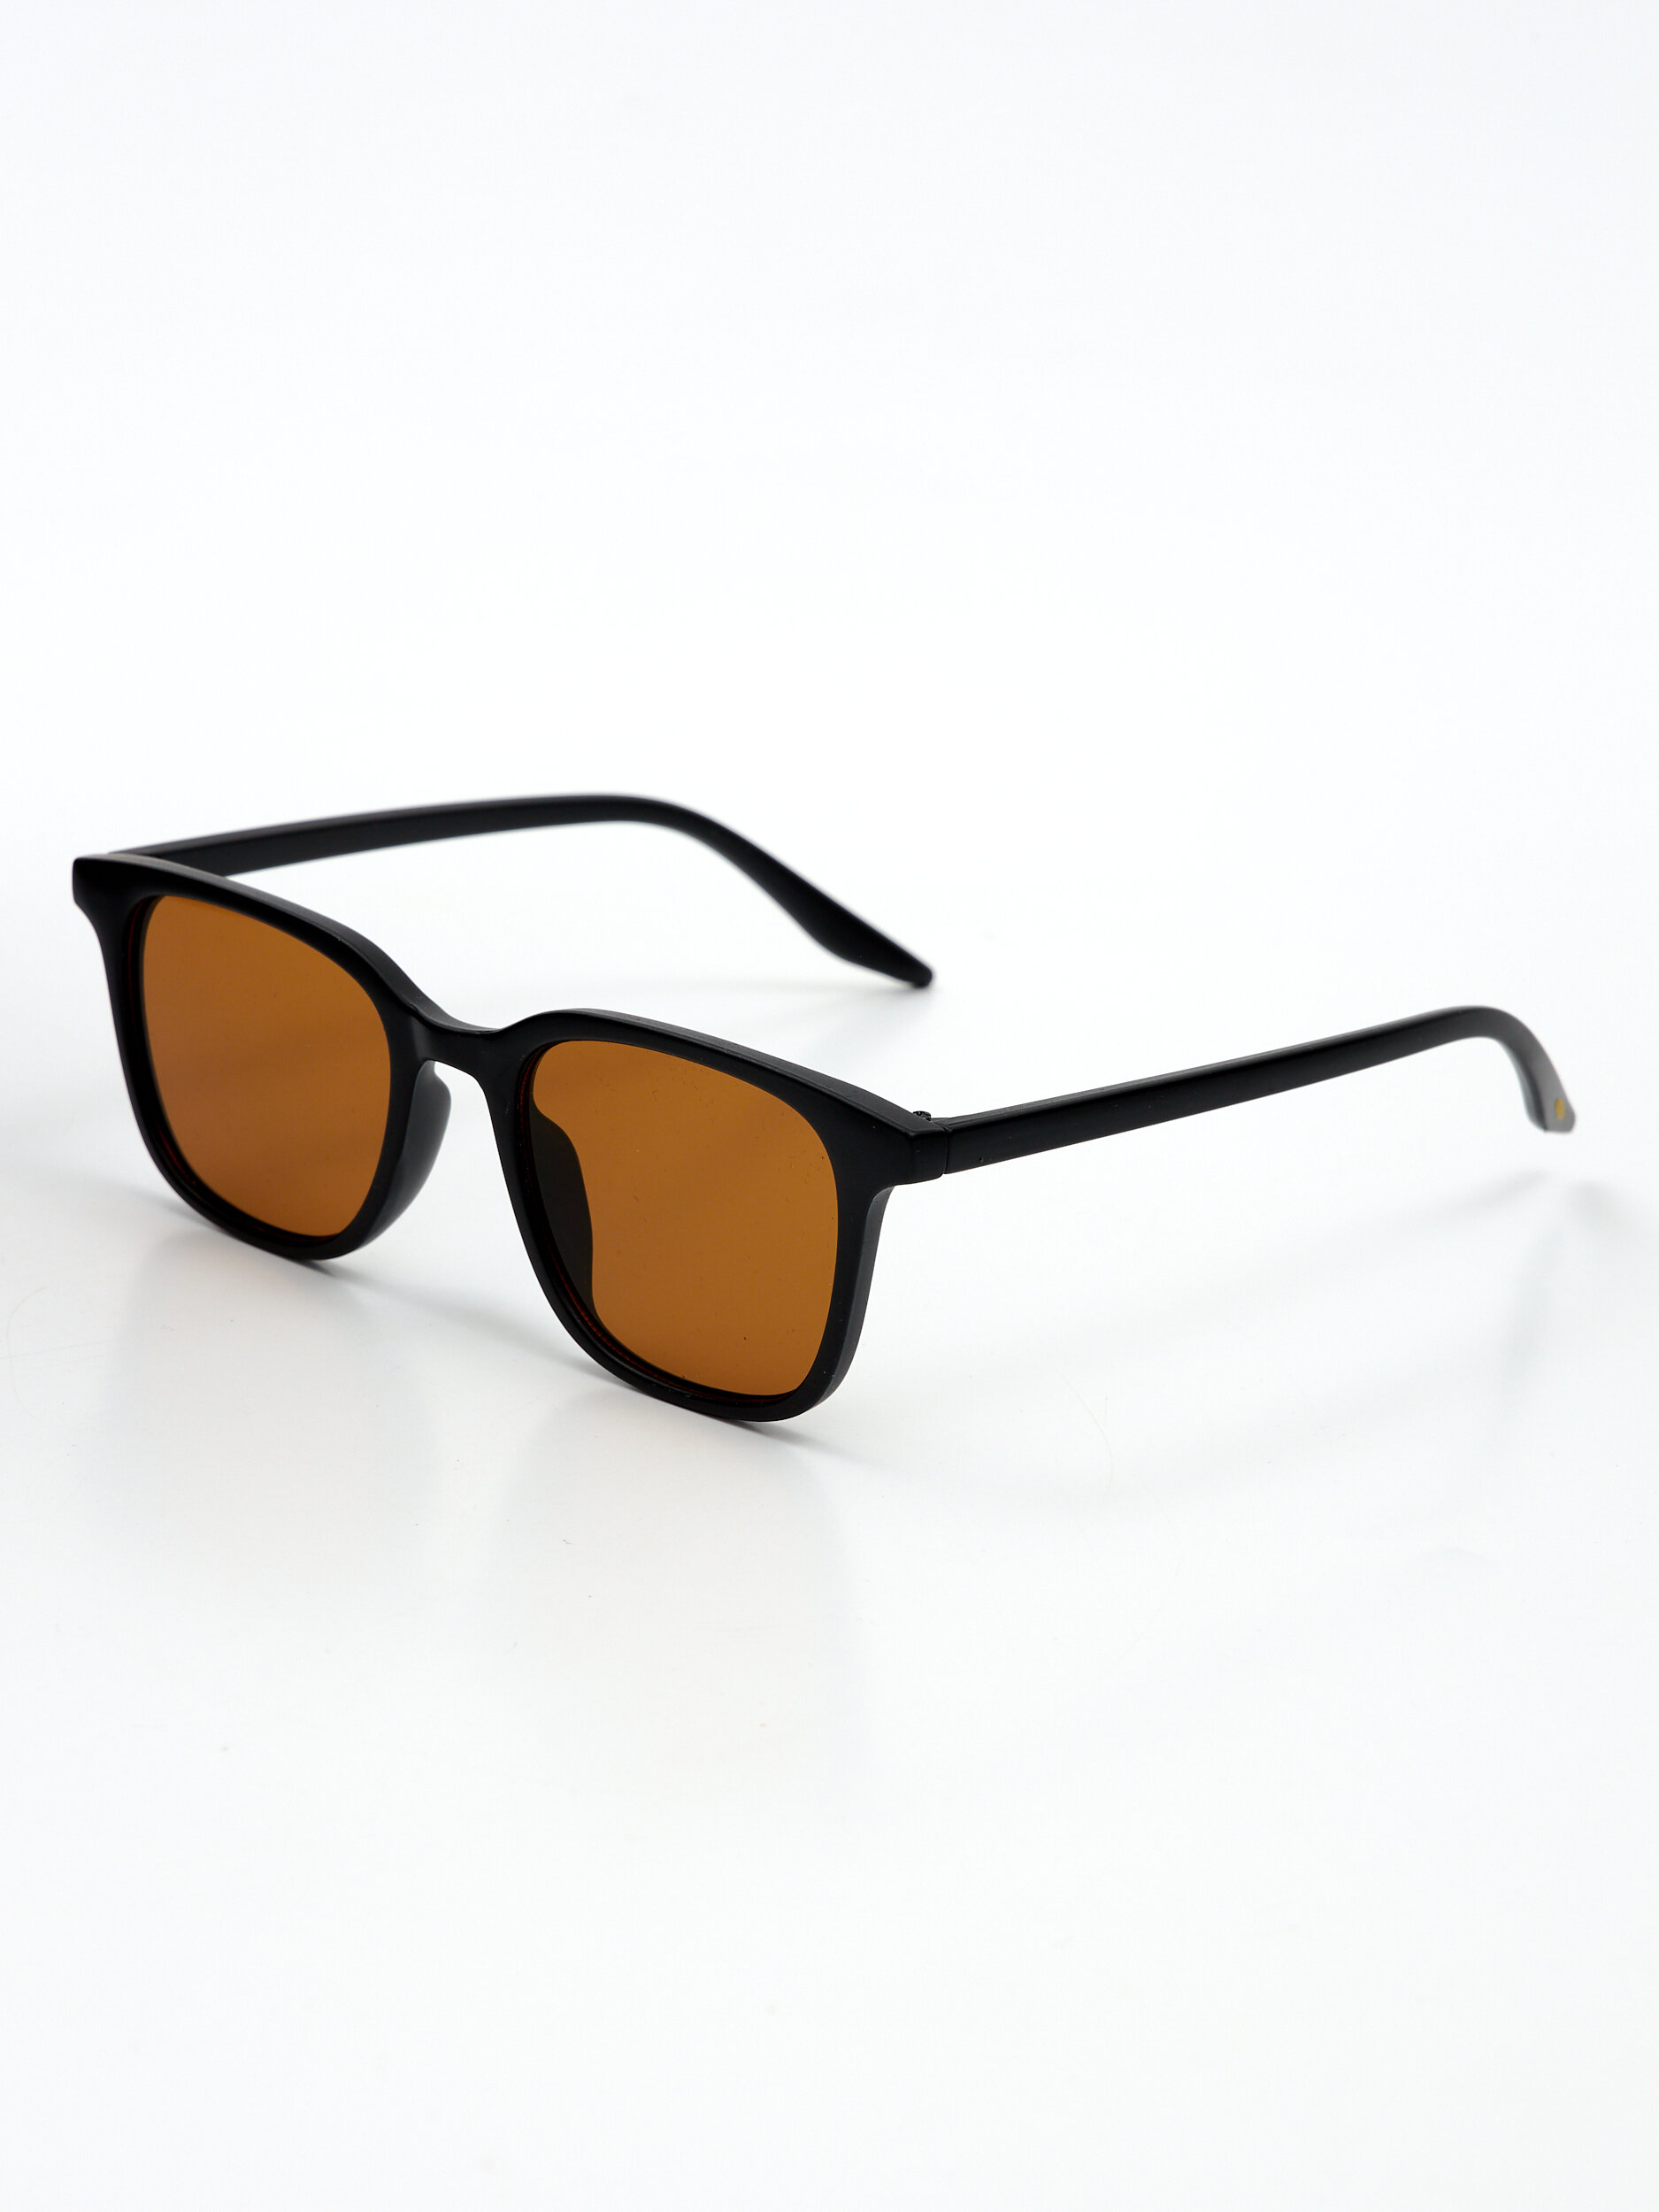 Солнцезащитные очки унисекс RESIN Esglass коричневые